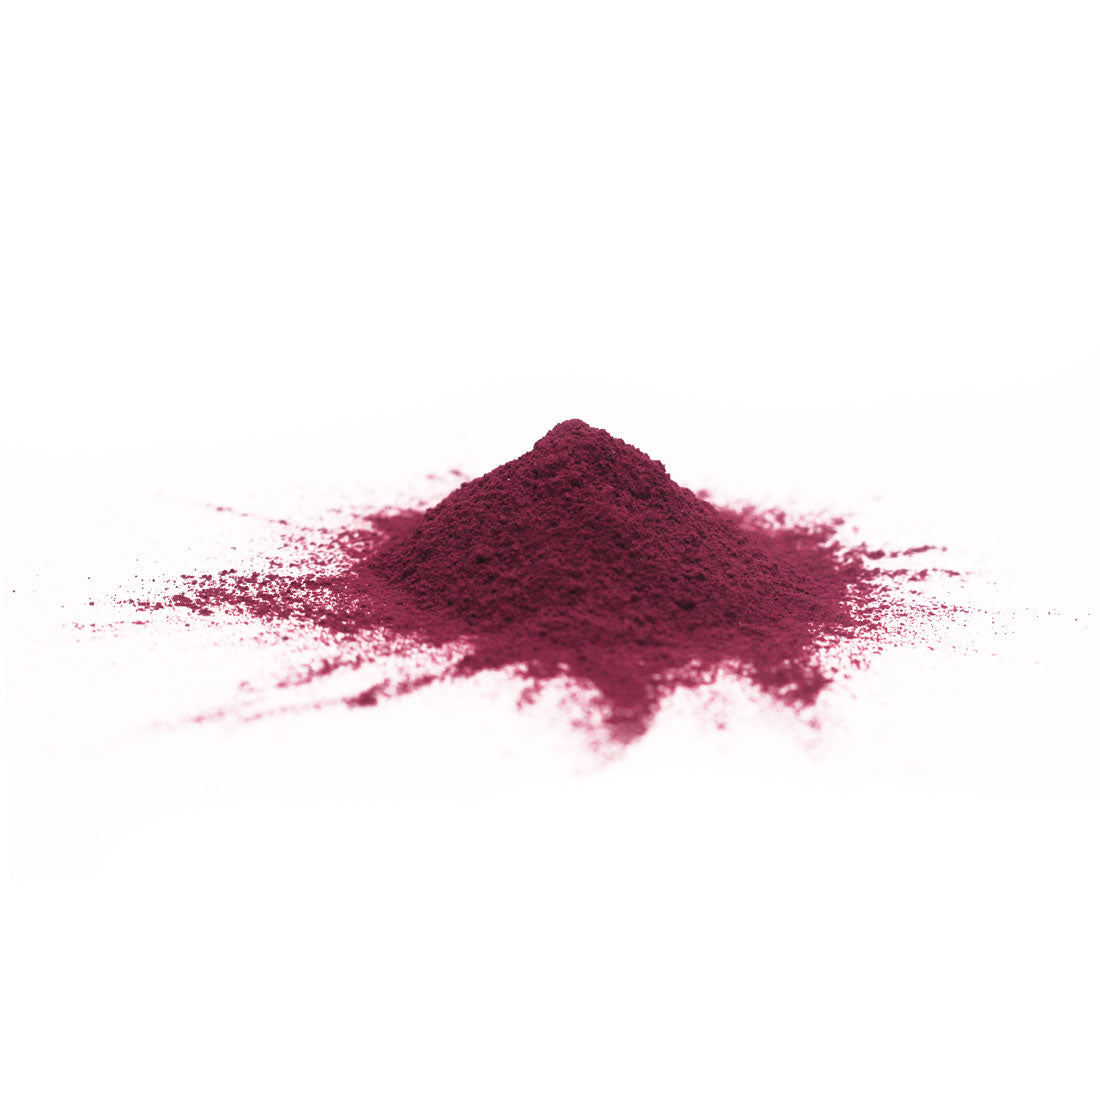 Hibiscus extract powder